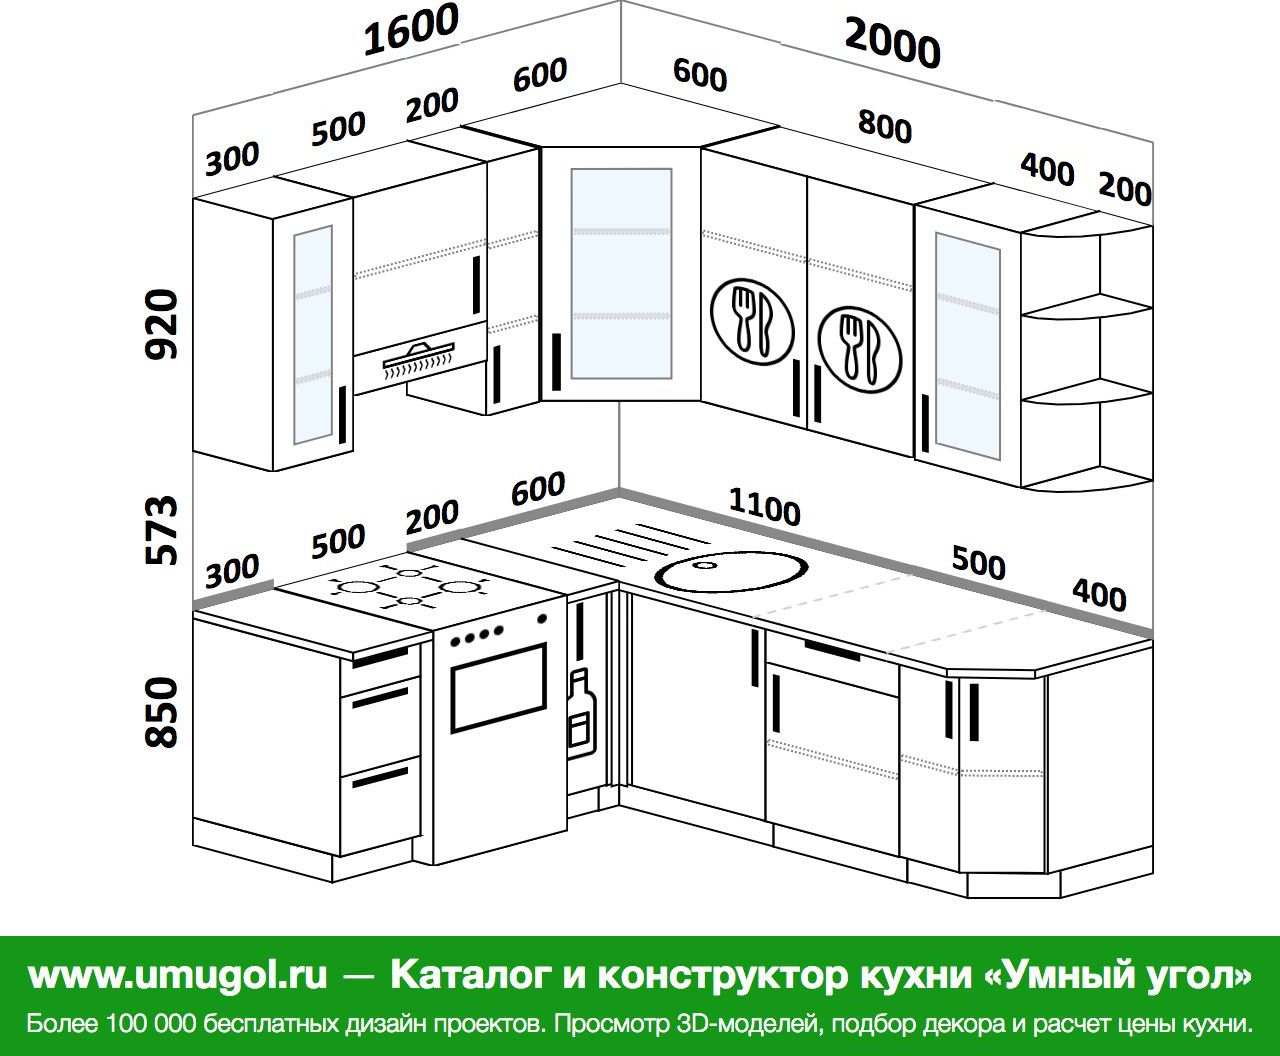 Как рассчитать длину столешницы для угловой кухни